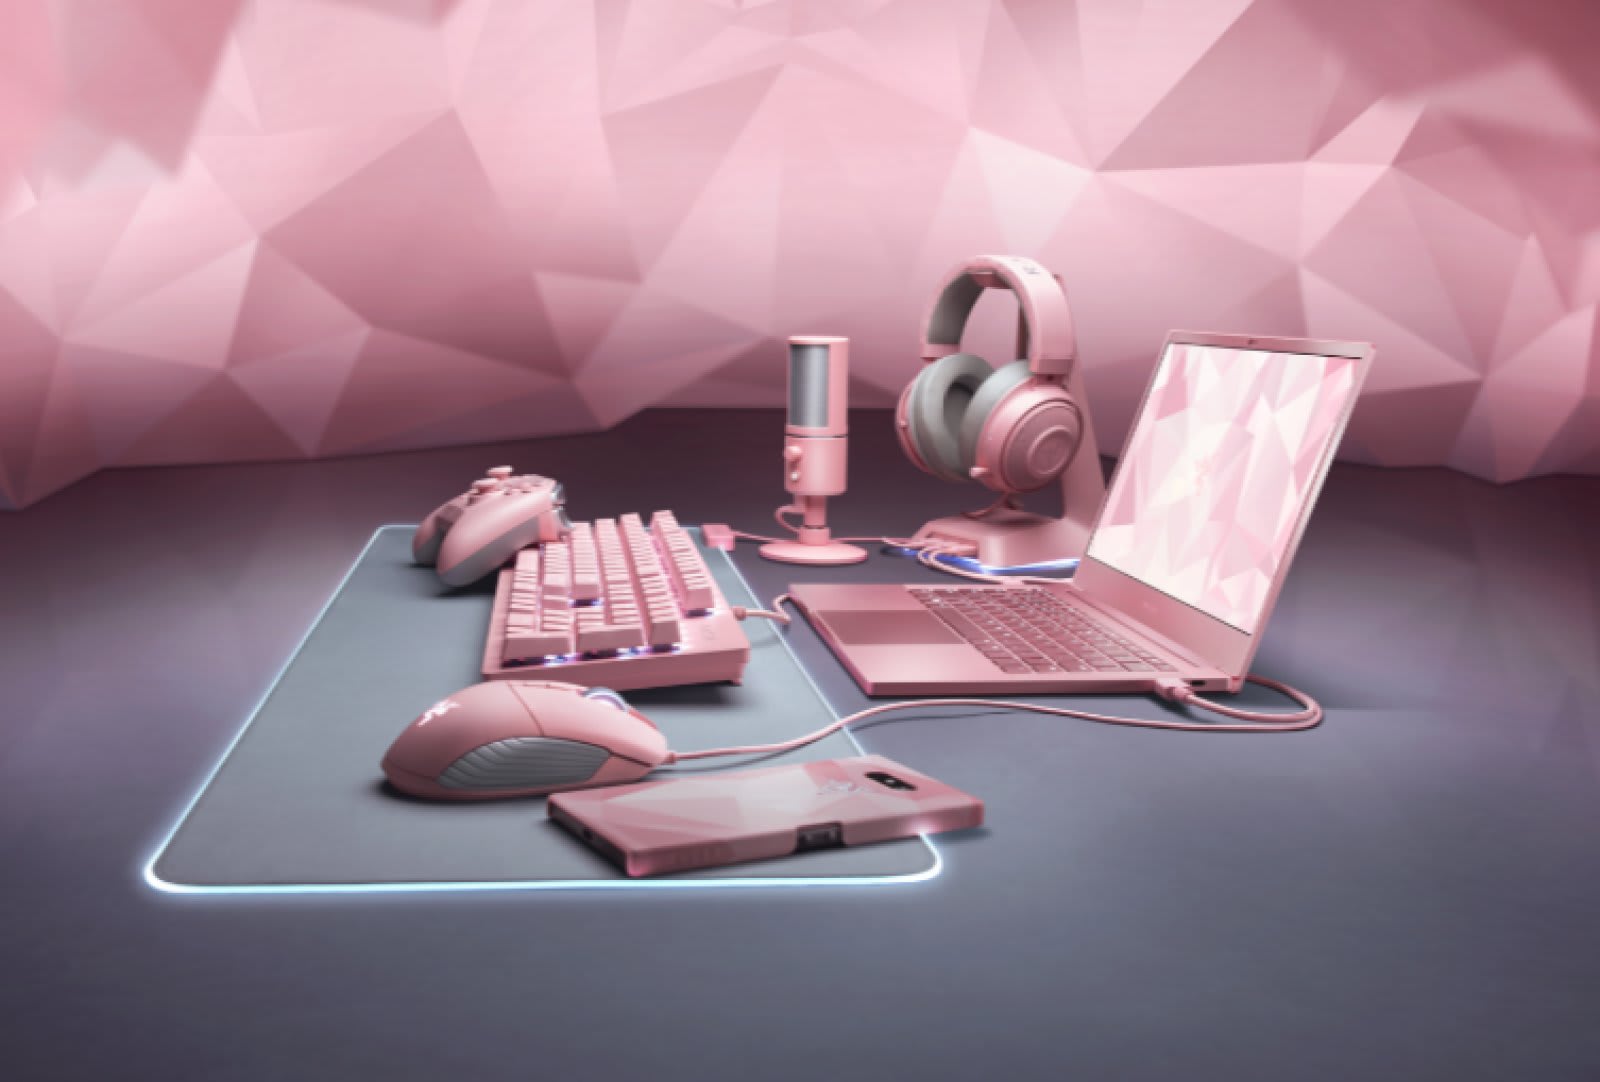 Razer バレンタインに合わせてquartz Pink Editionを発表 ラップトップもピンクに Engadget 日本版